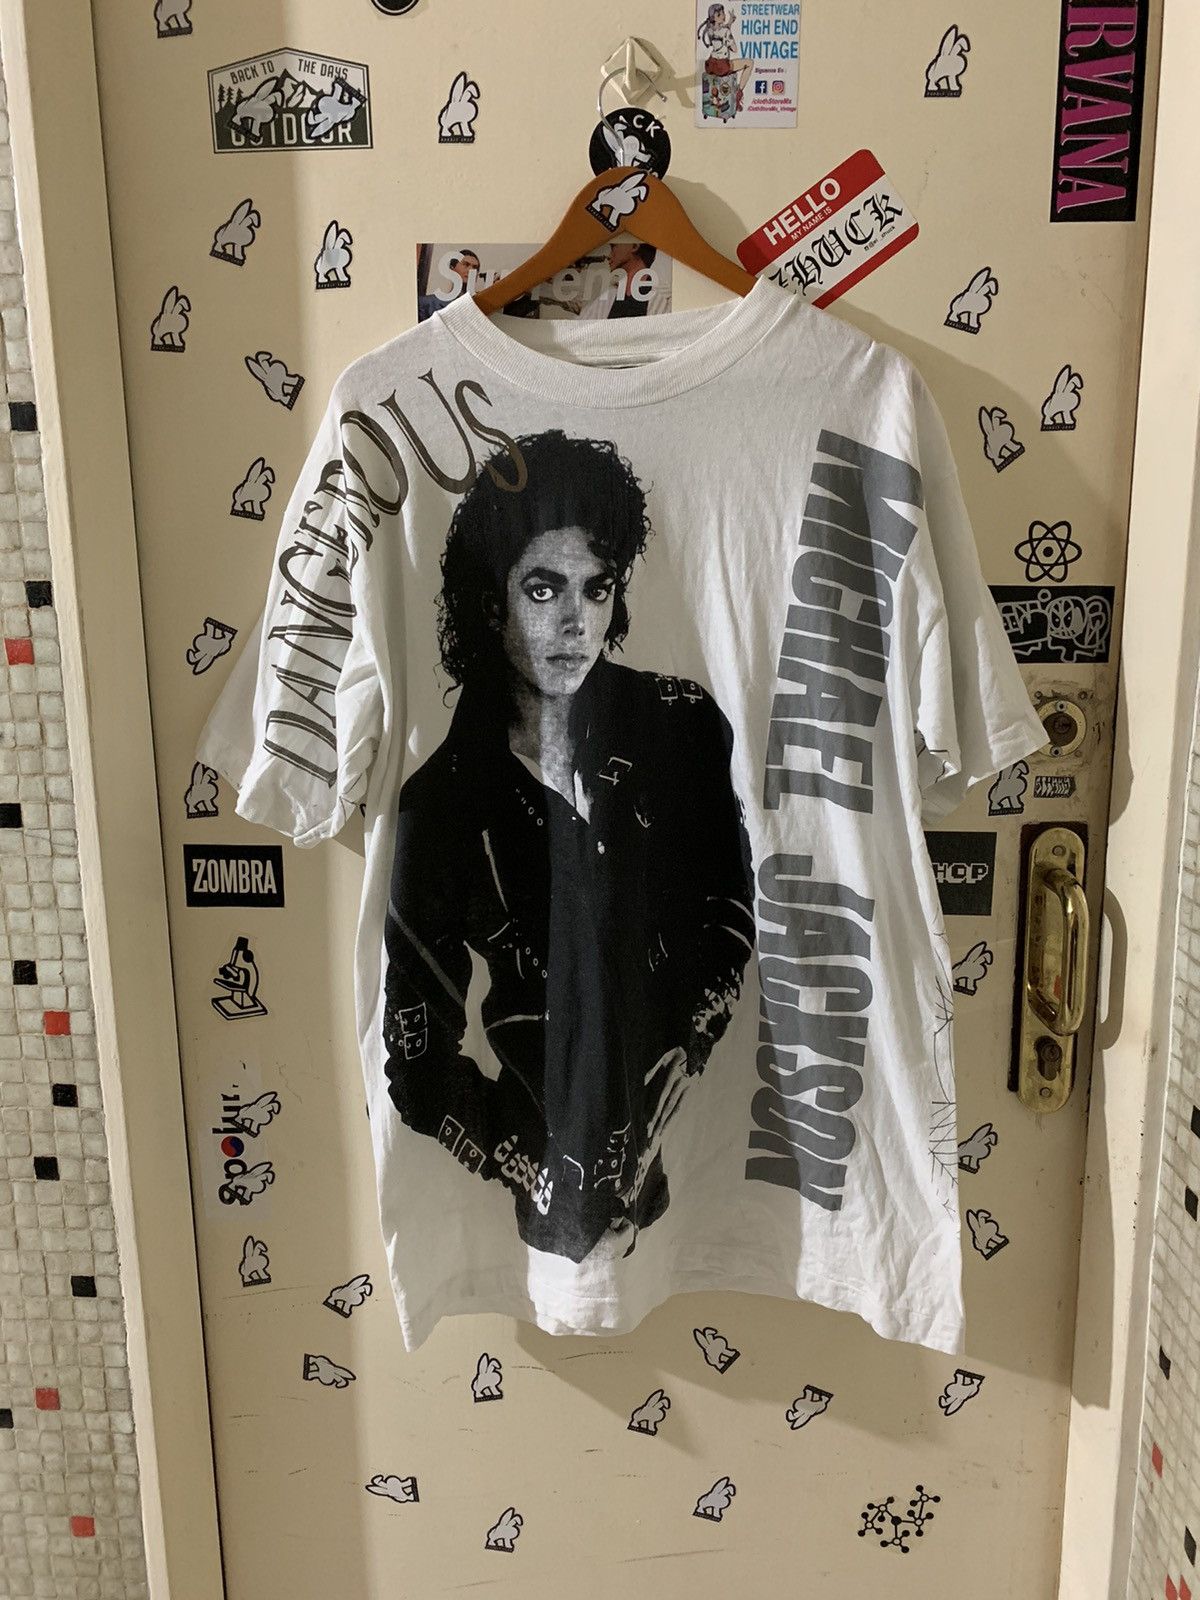 Vintage Vintage Michael Jackson Dangerous Tour Mega Print T Shirt